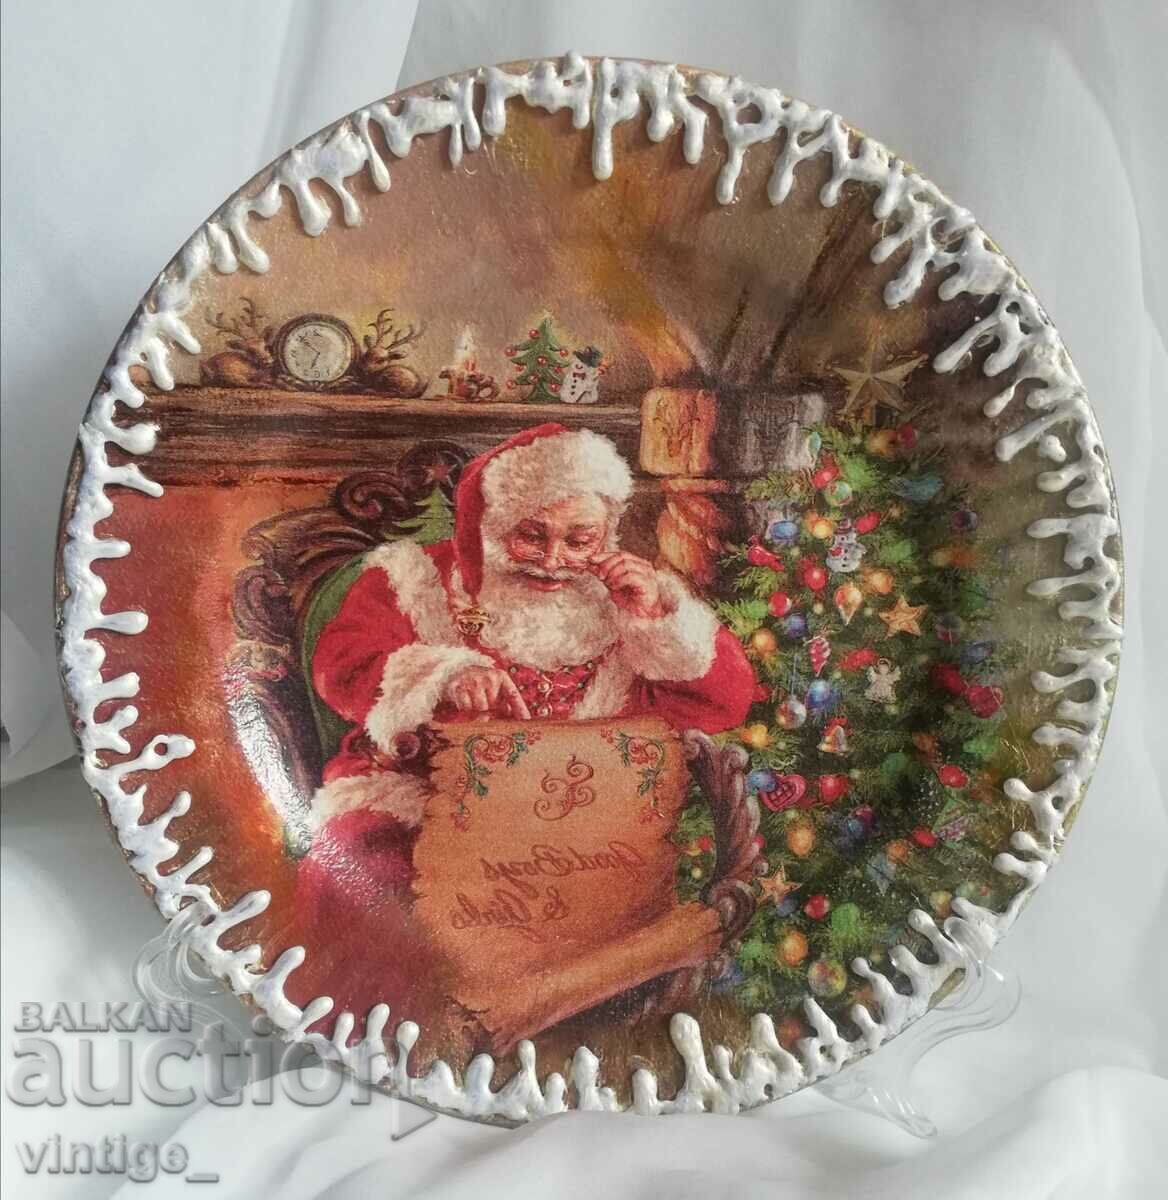 Χριστουγεννιάτικο πιάτο με τον Άγιο Βασίλη